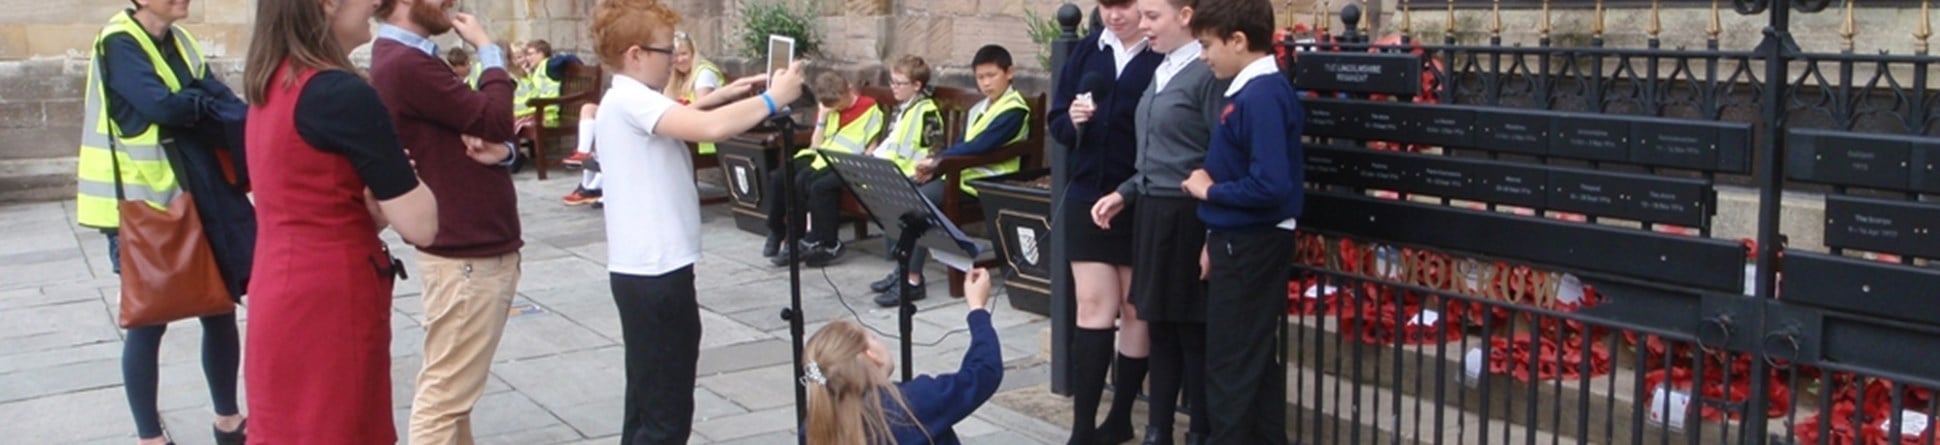 Schoolchildren and teachers filming outside a church.